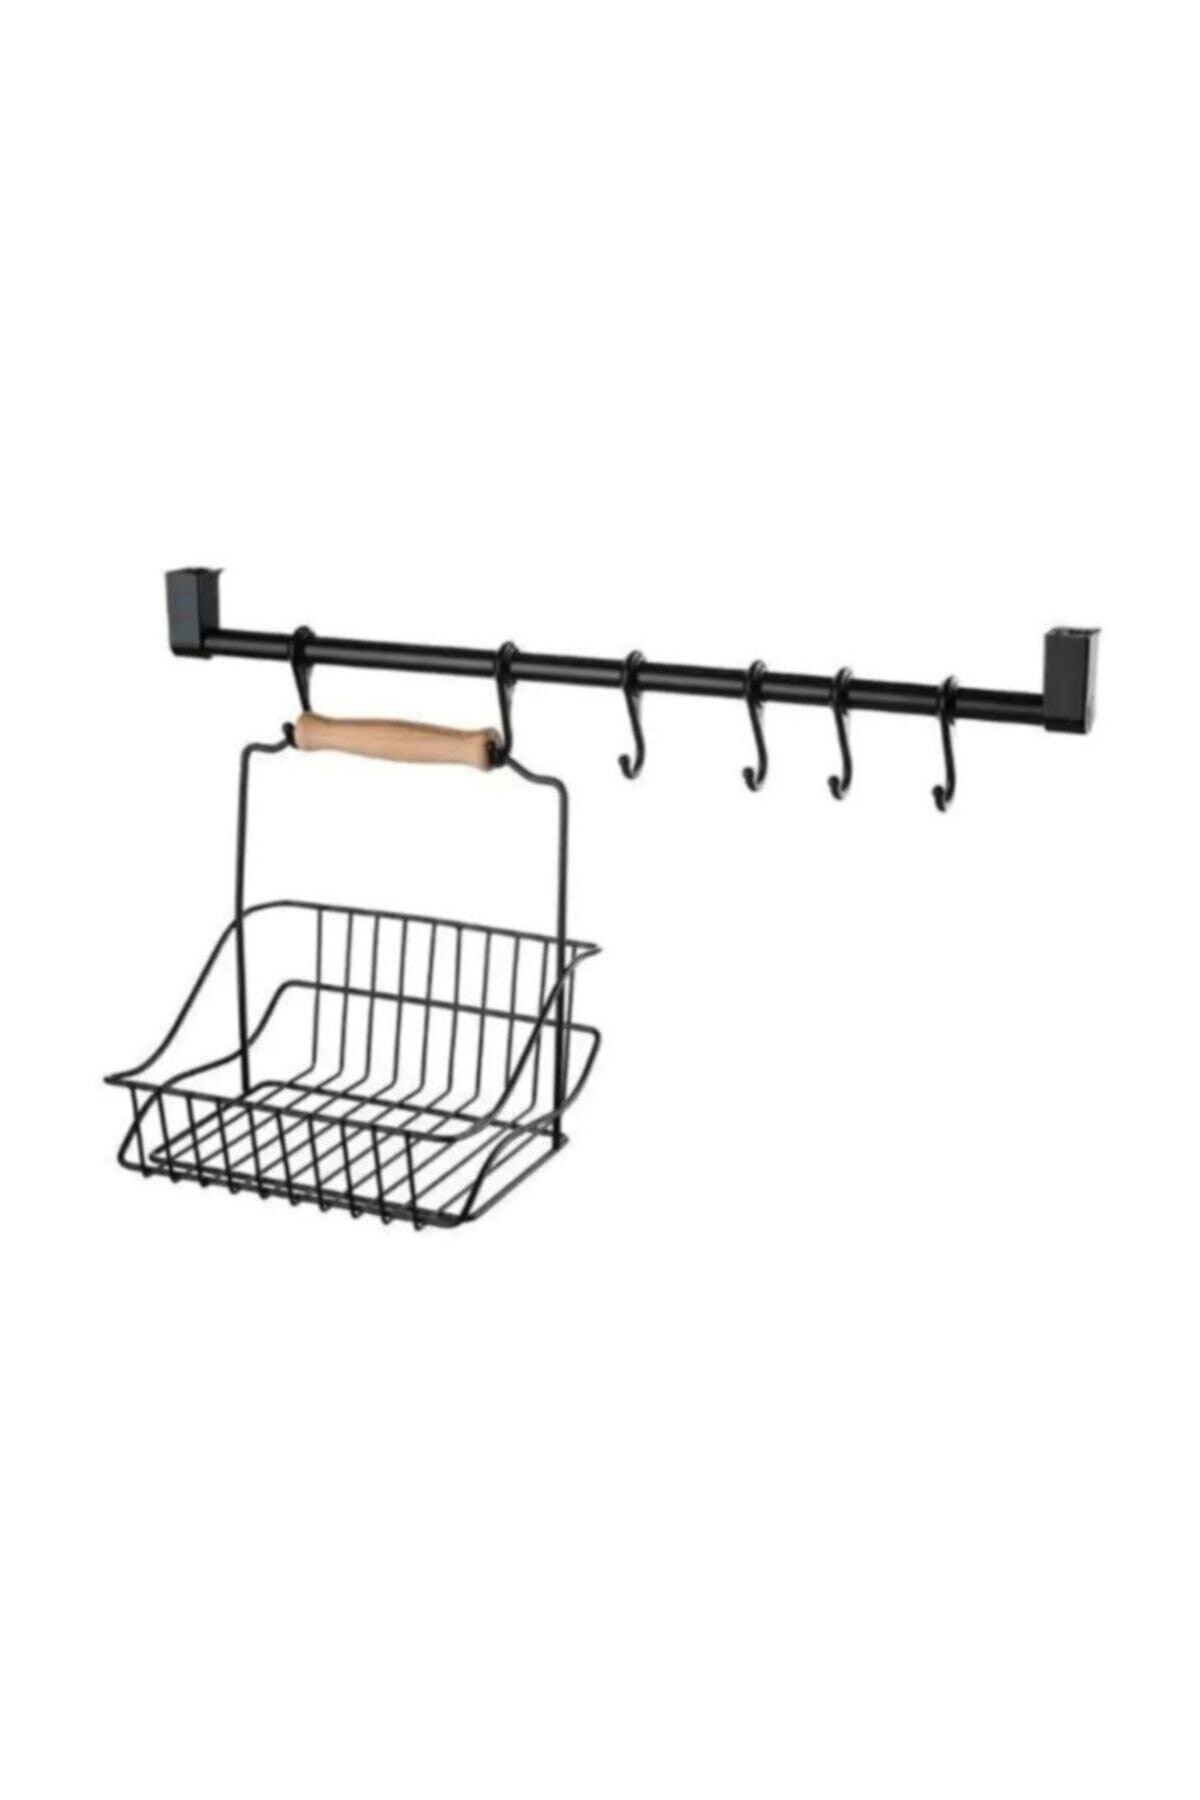 Metal Basket Hanger And Hook Set Wrought Iron